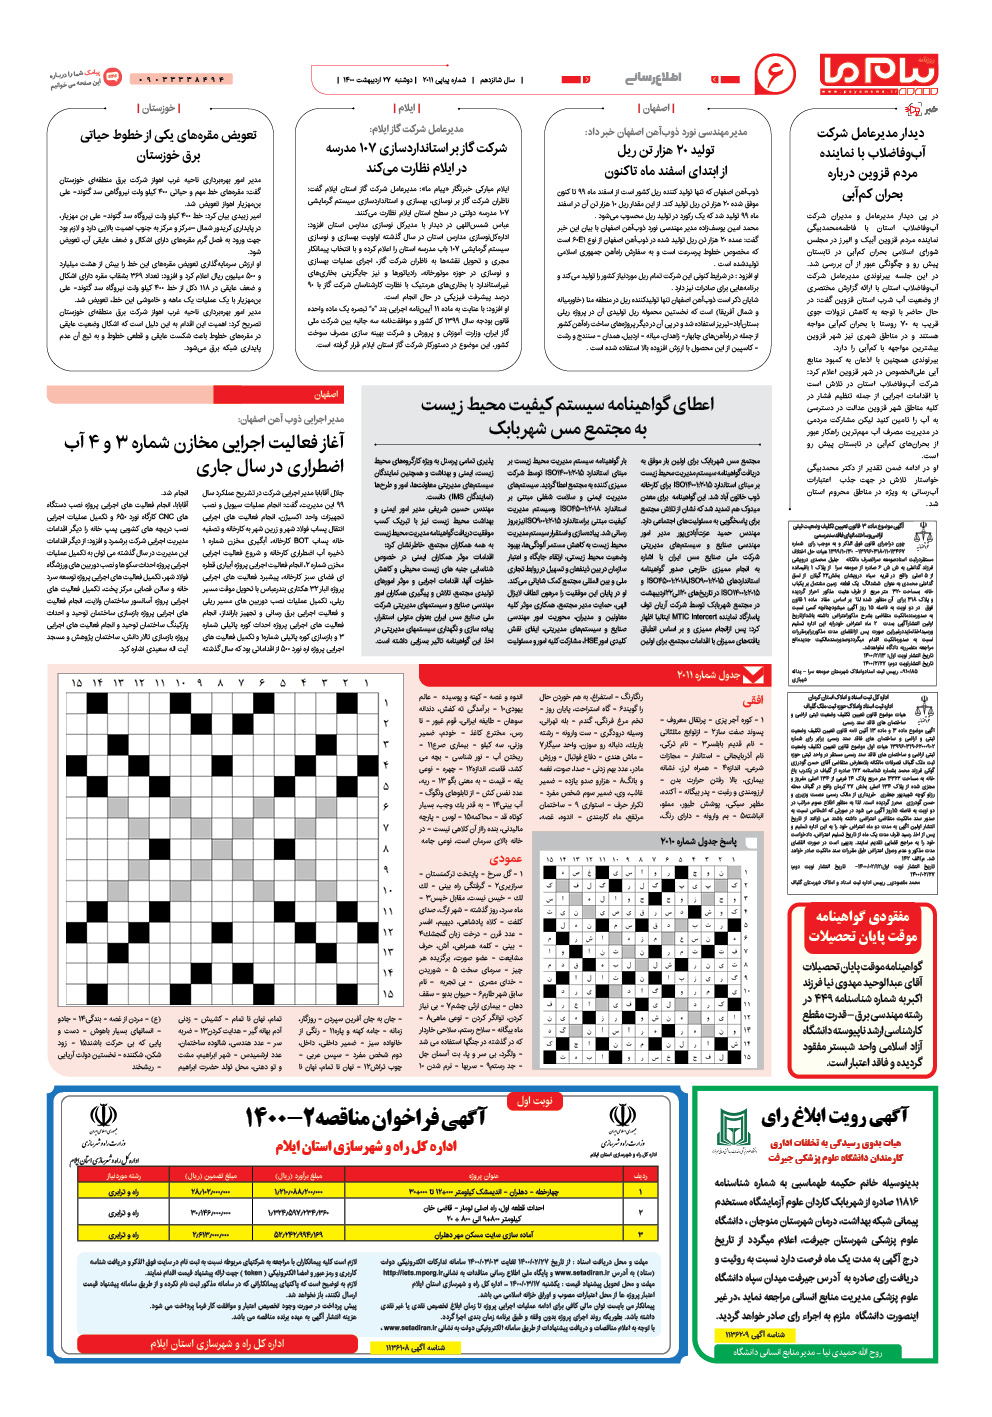 صفحه اطلاع رسانی شماره 2011 روزنامه پیام ما